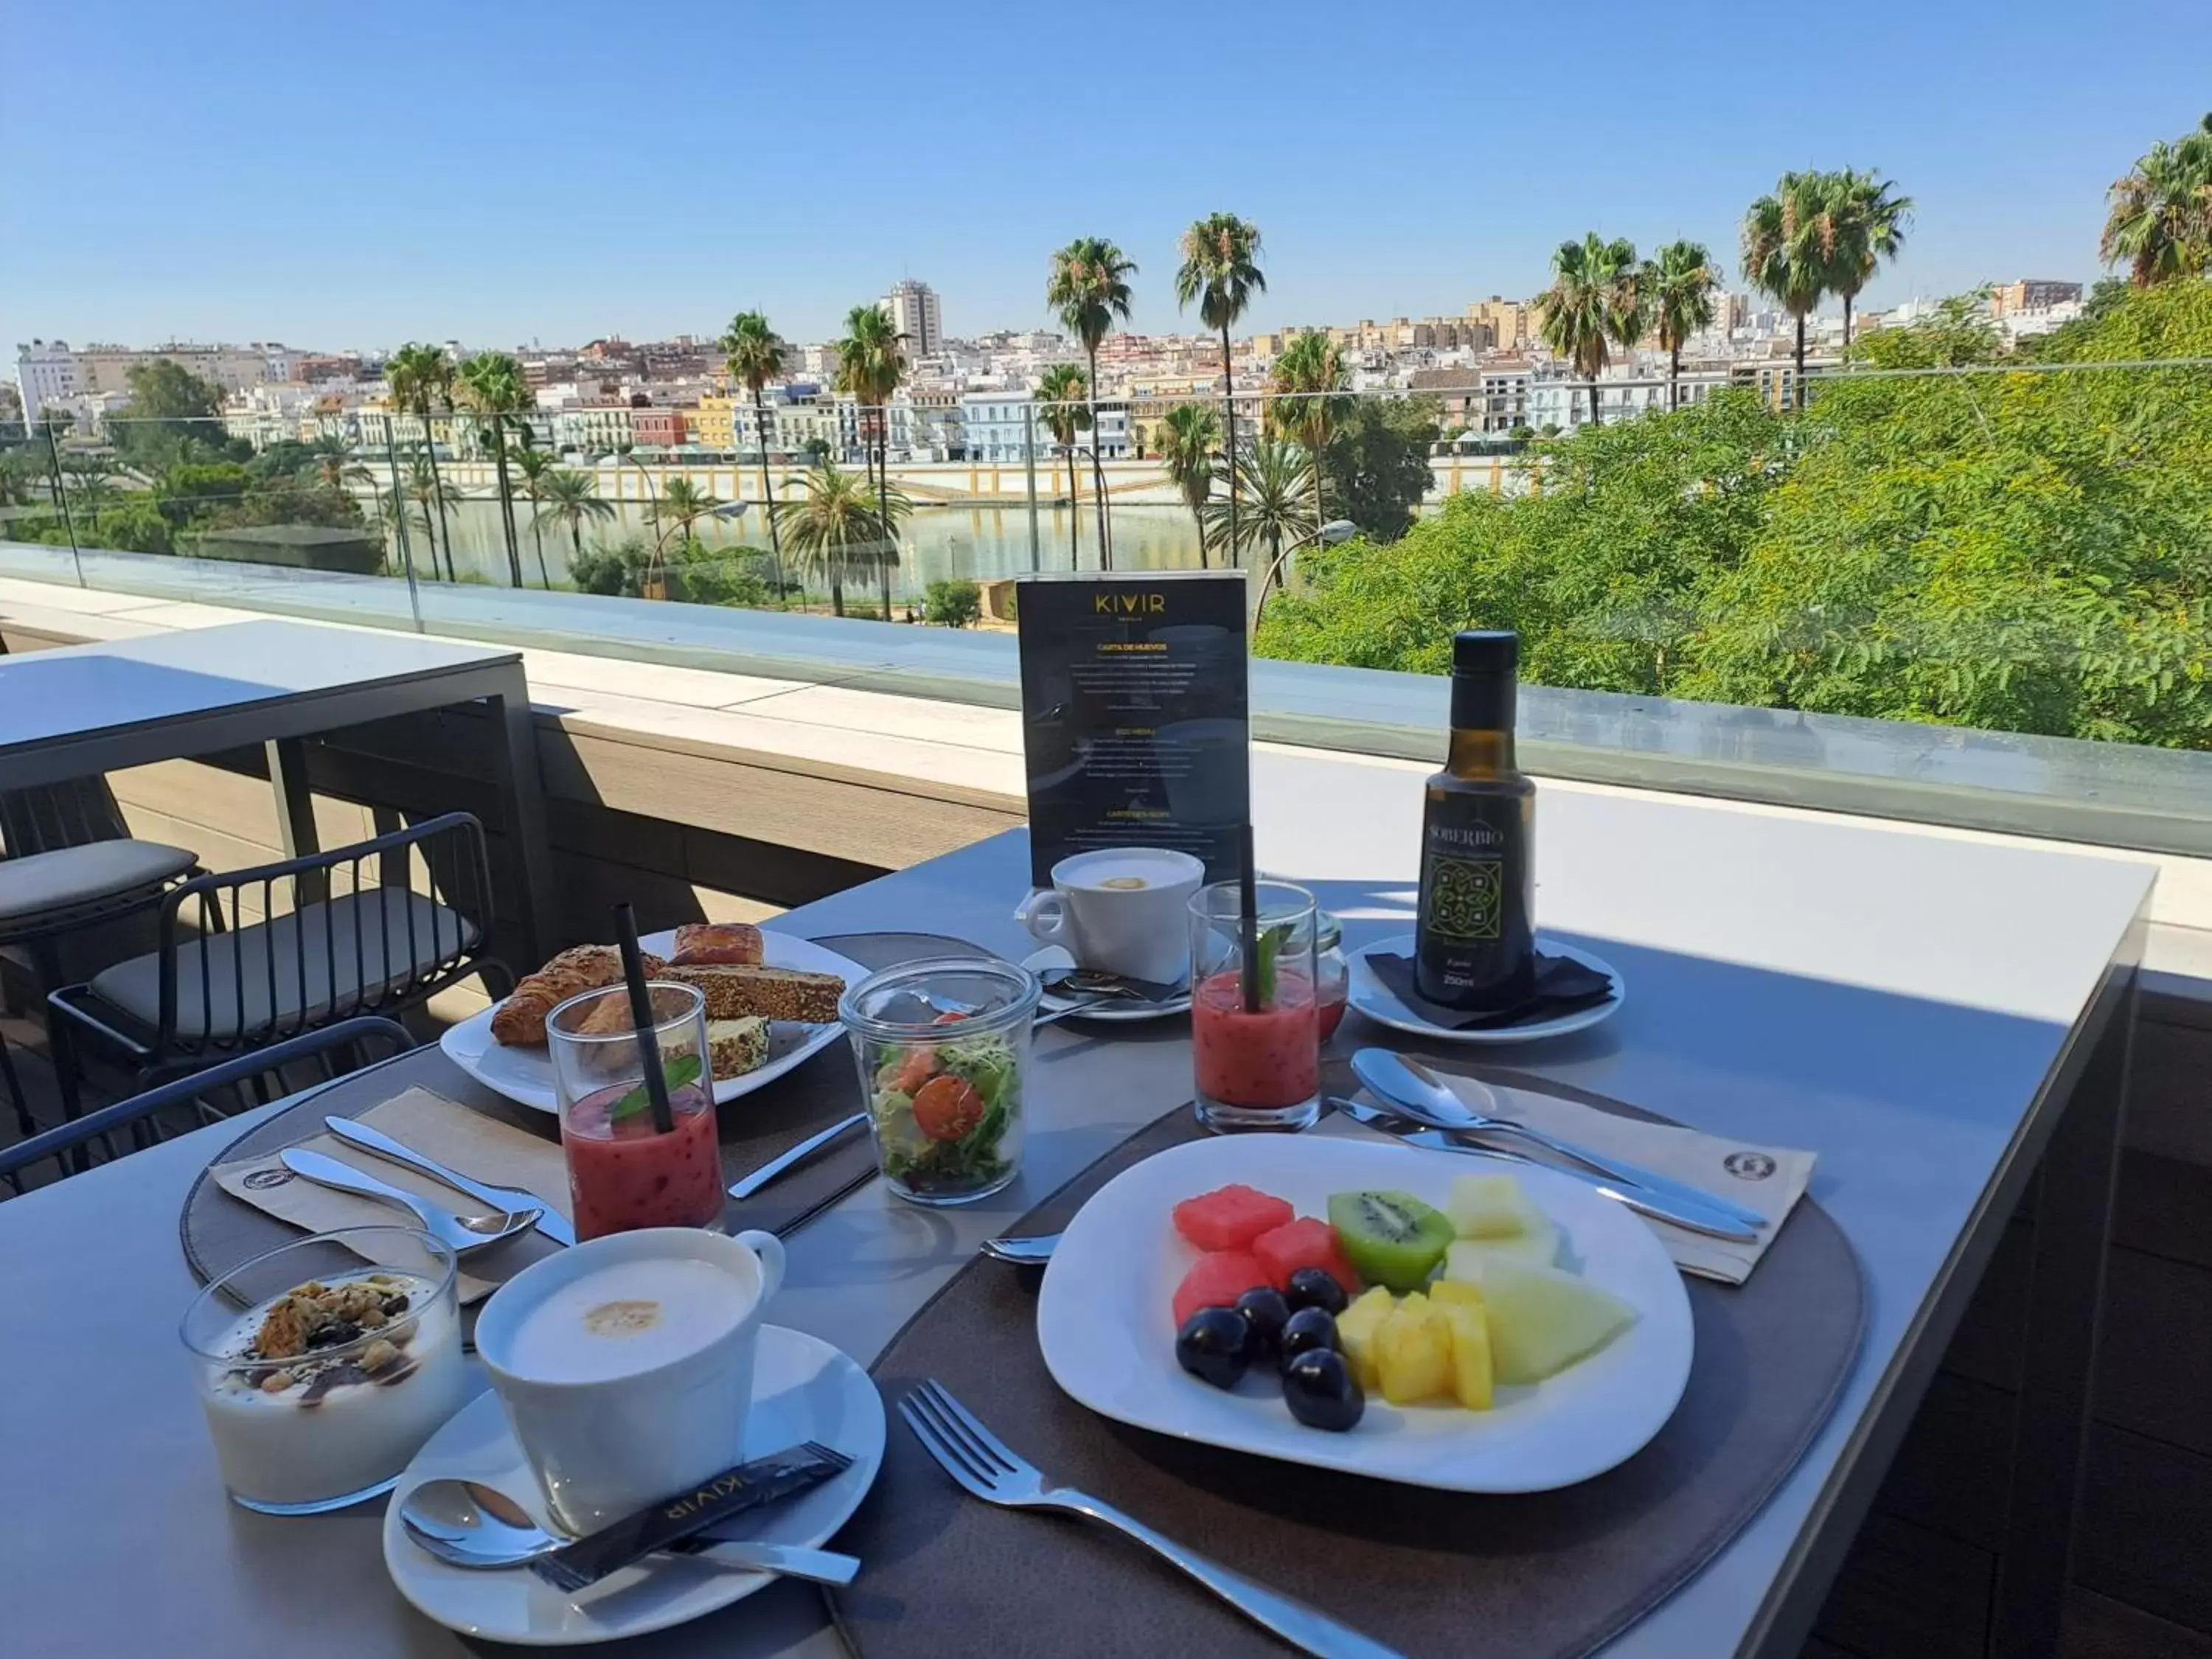 Breakfast in Hotel Kivir